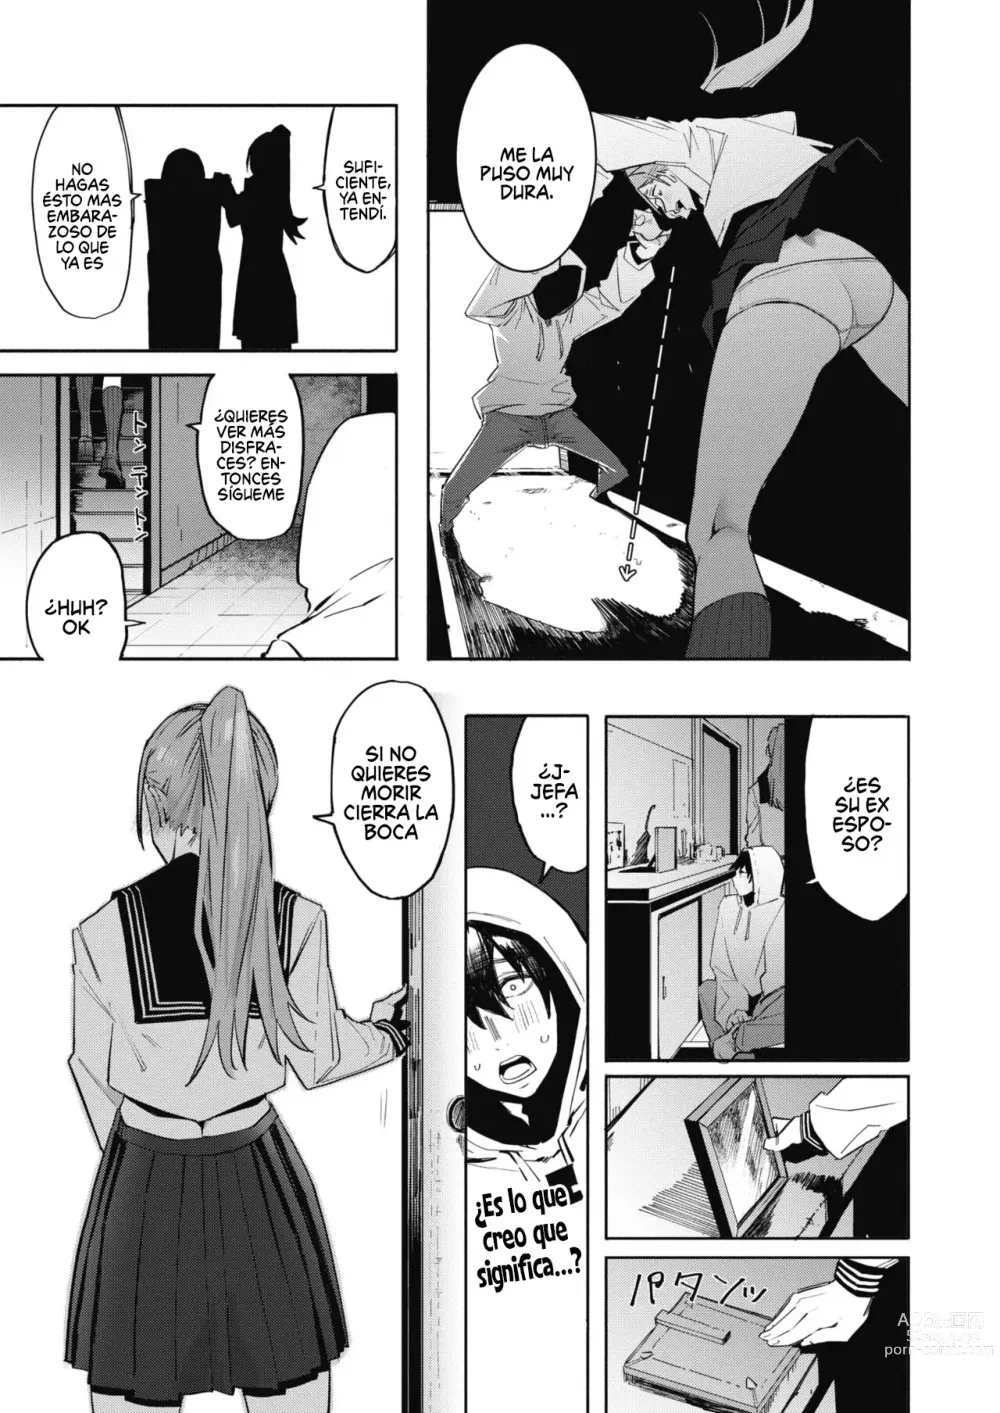 Page 5 of manga Estas exagerando abuela!